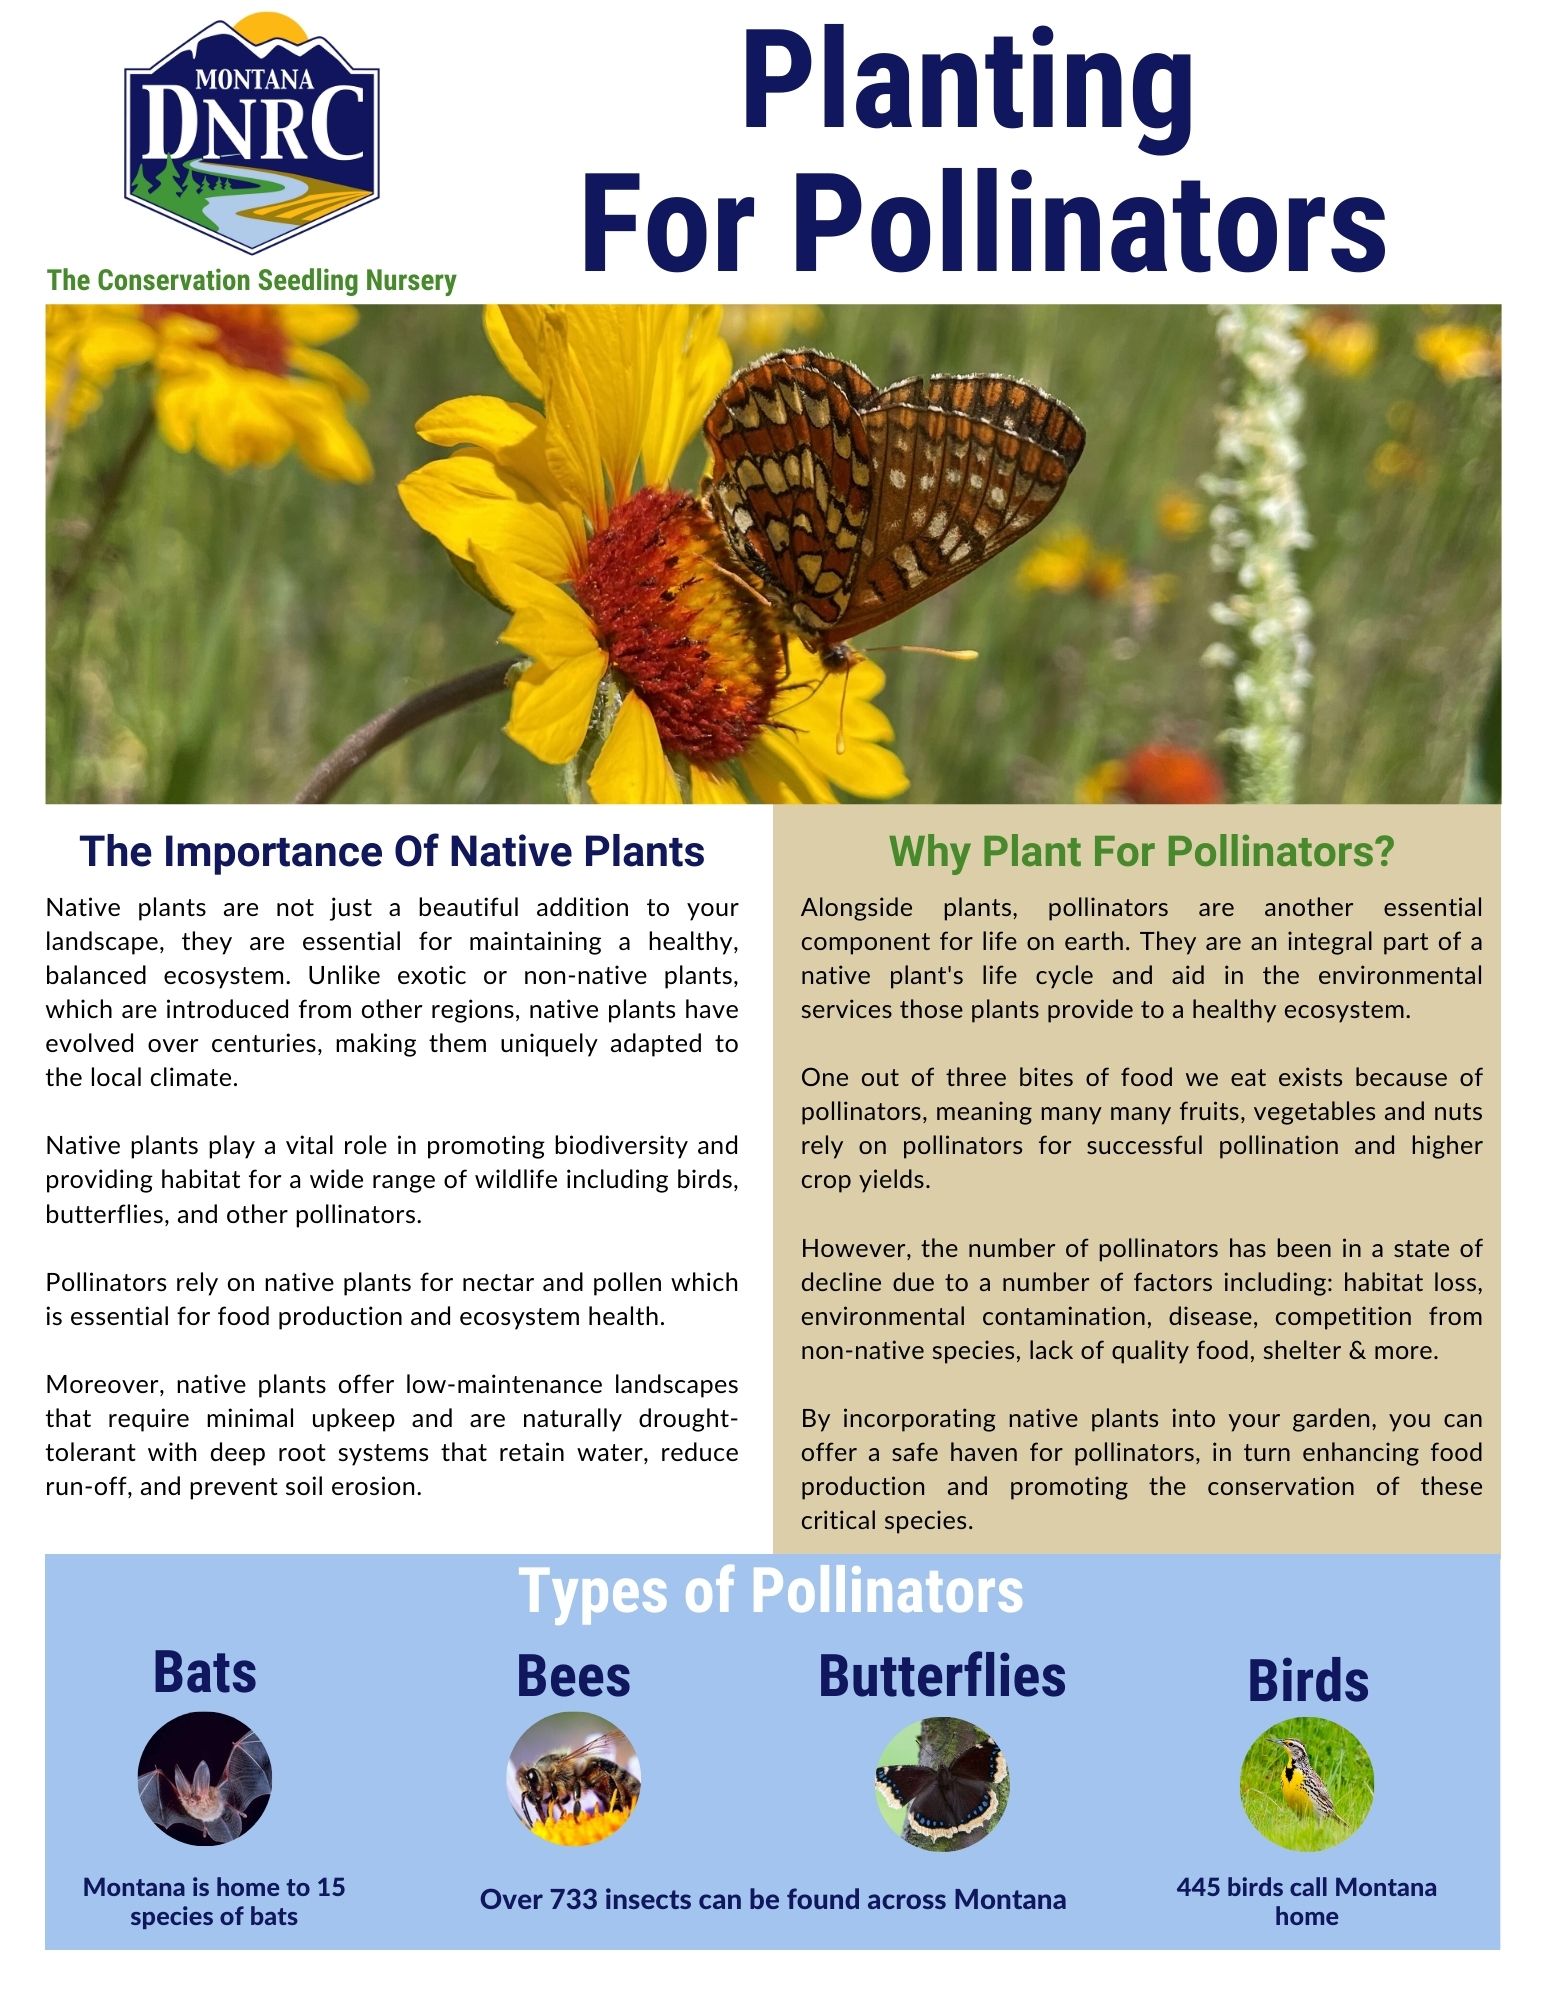 pollinators